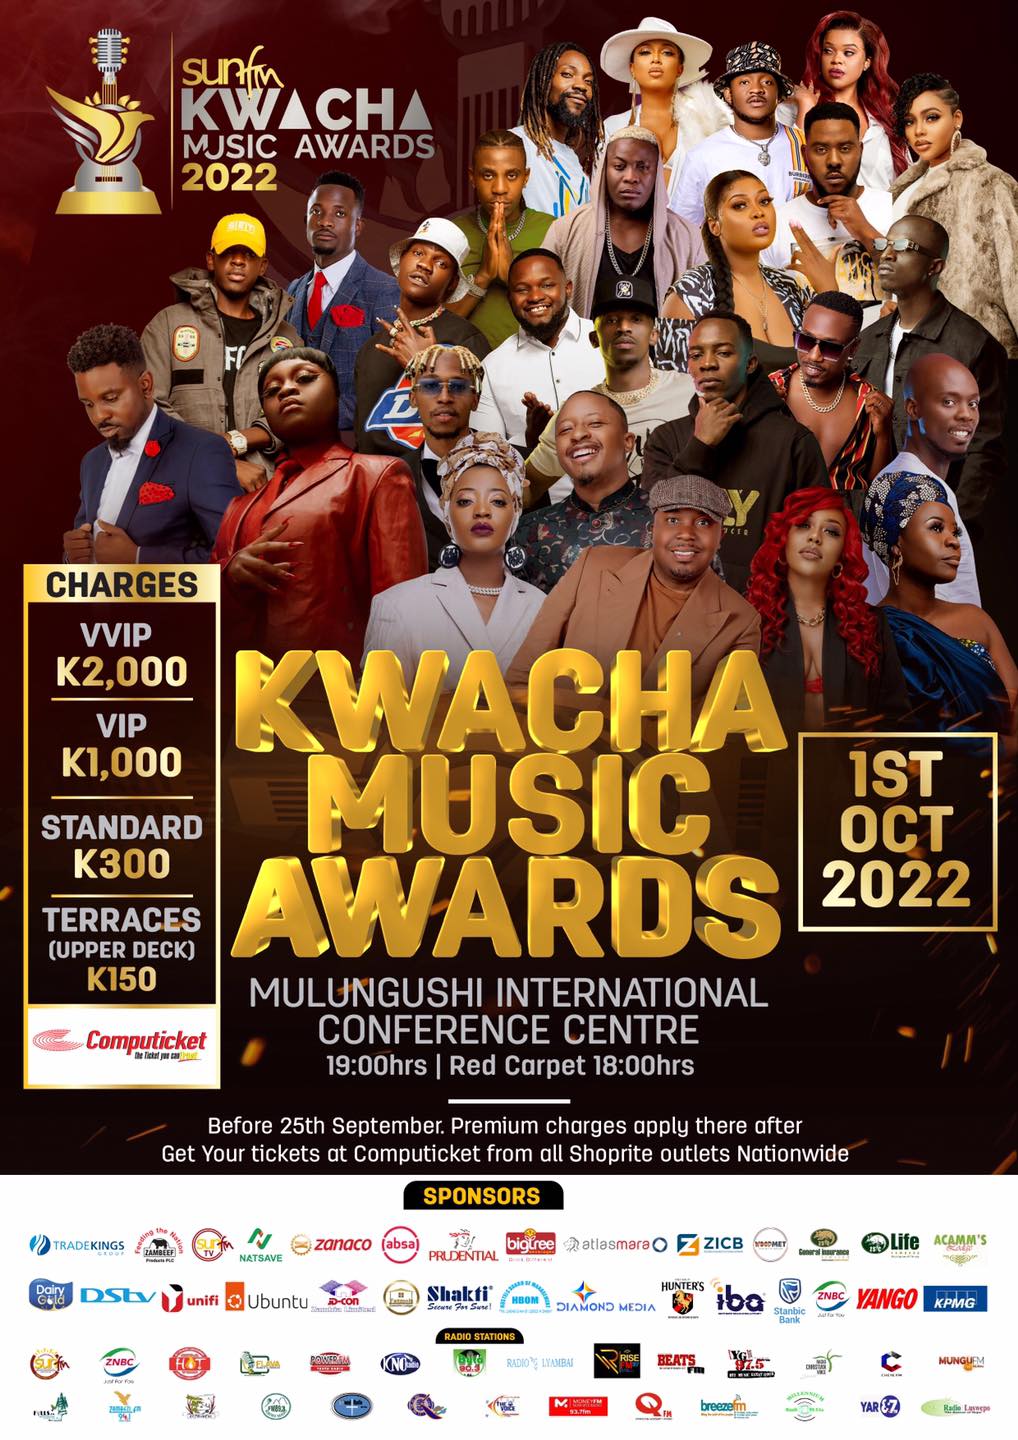 2022 Kwacha Music Awards Winners & Performances